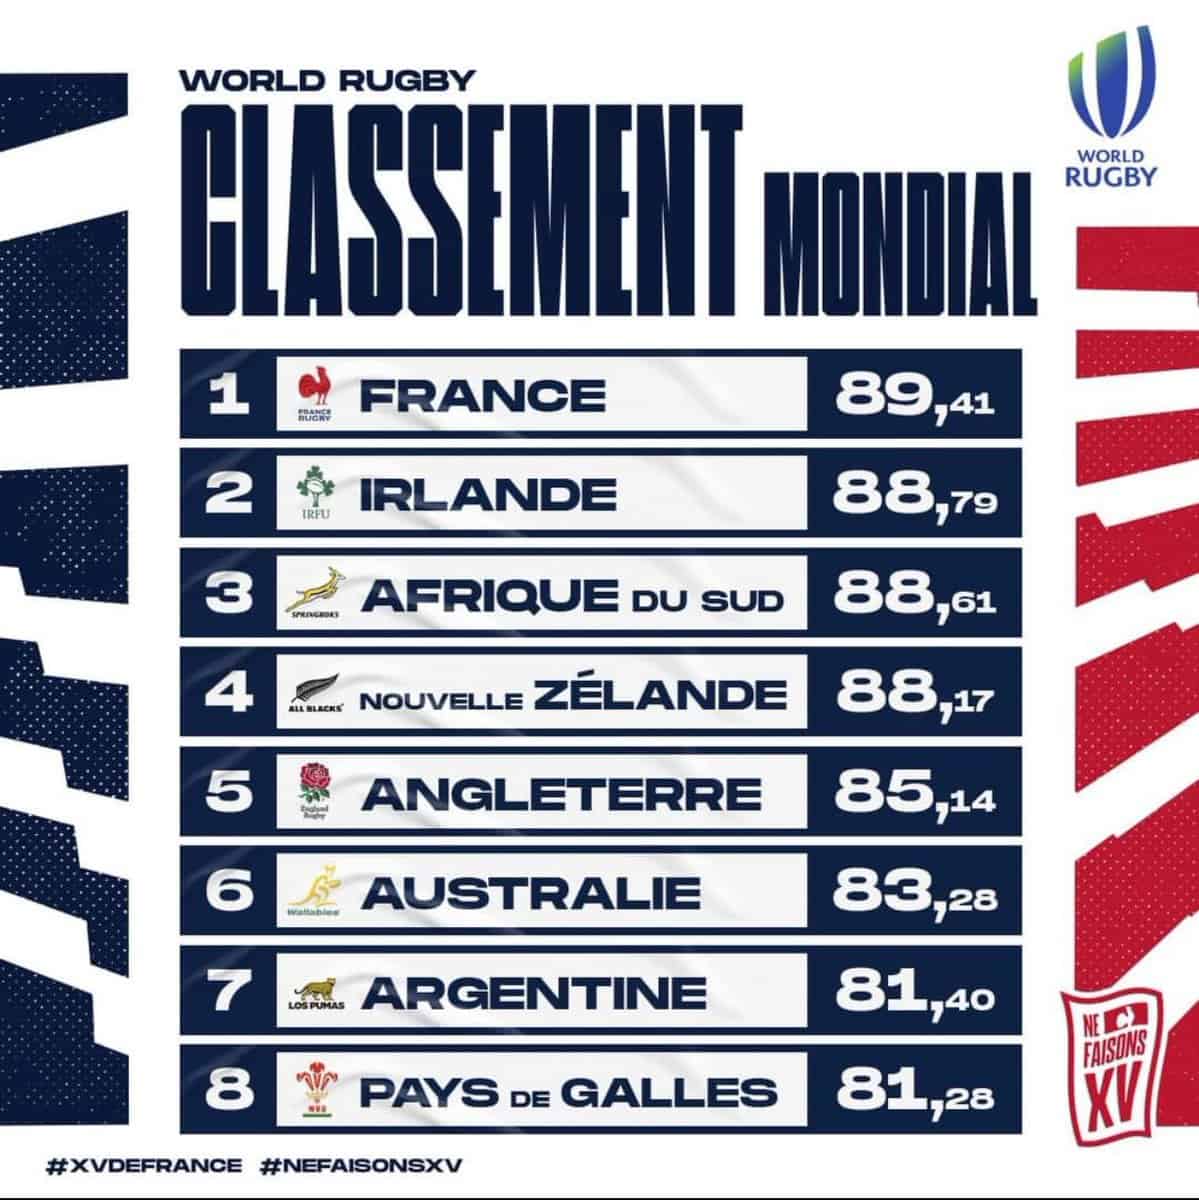 Rugby: France unang bansa sa mundo sa unang pagkakataon sa kasaysayan nito